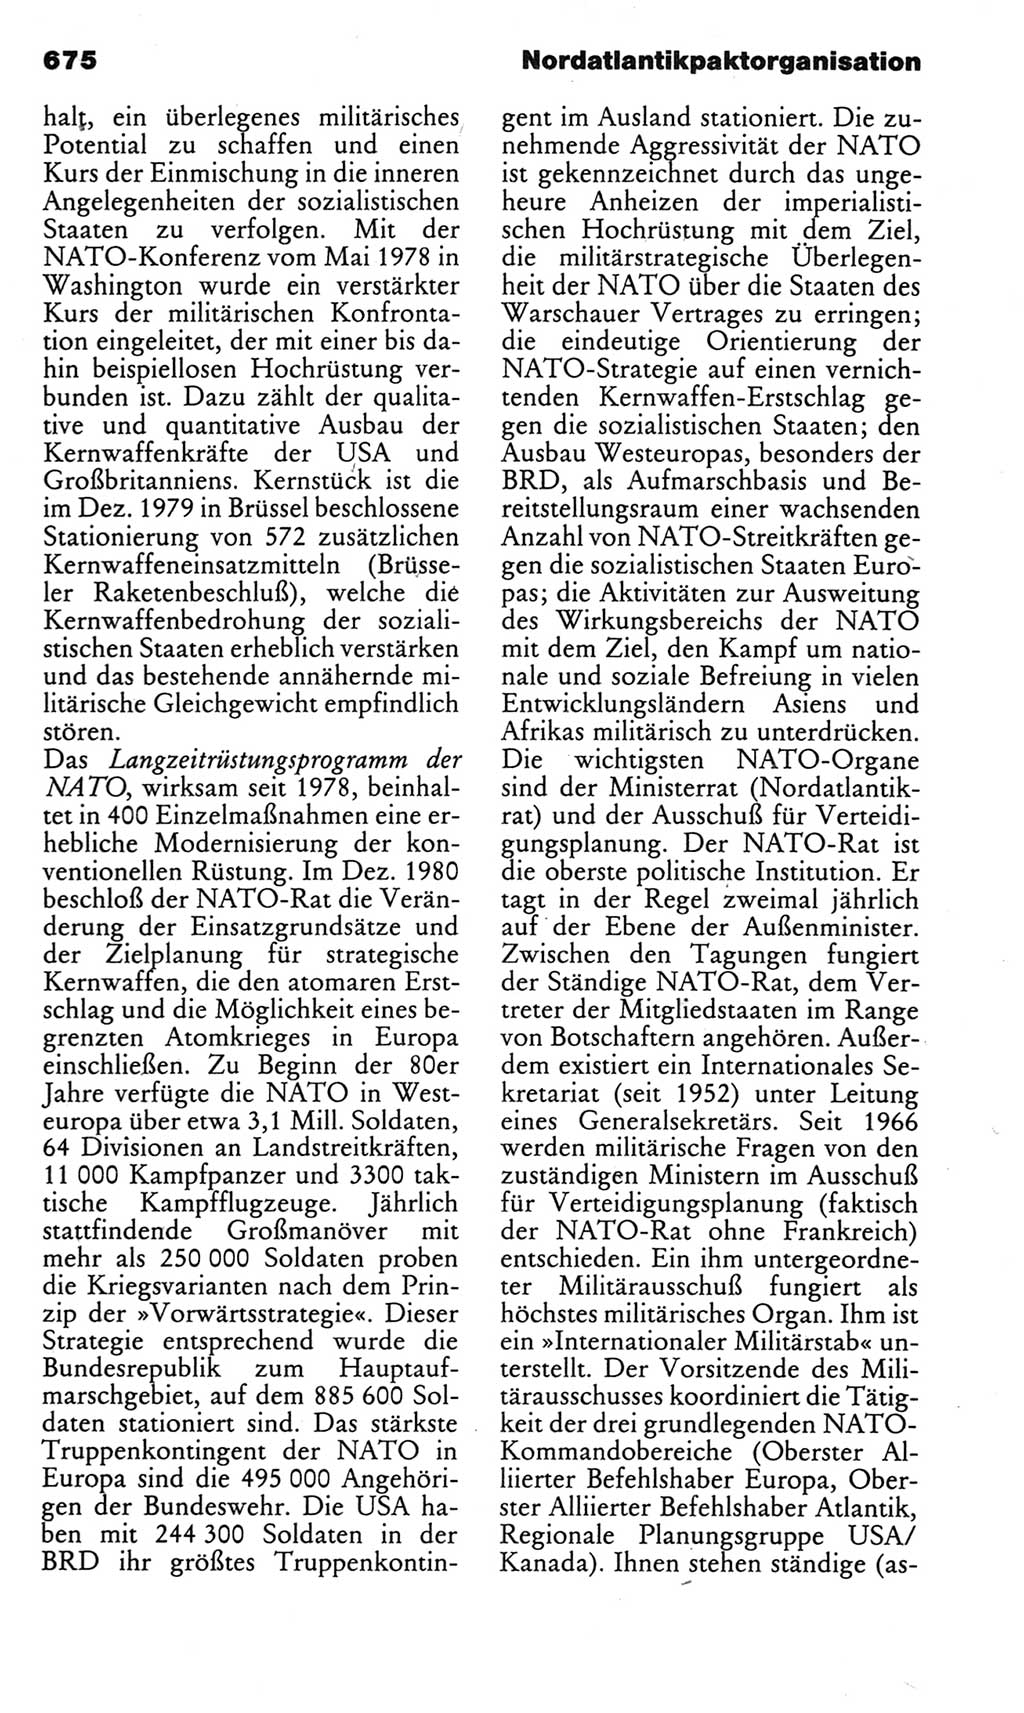 Kleines politisches Wörterbuch [Deutsche Demokratische Republik (DDR)] 1983, Seite 675 (Kl. pol. Wb. DDR 1983, S. 675)